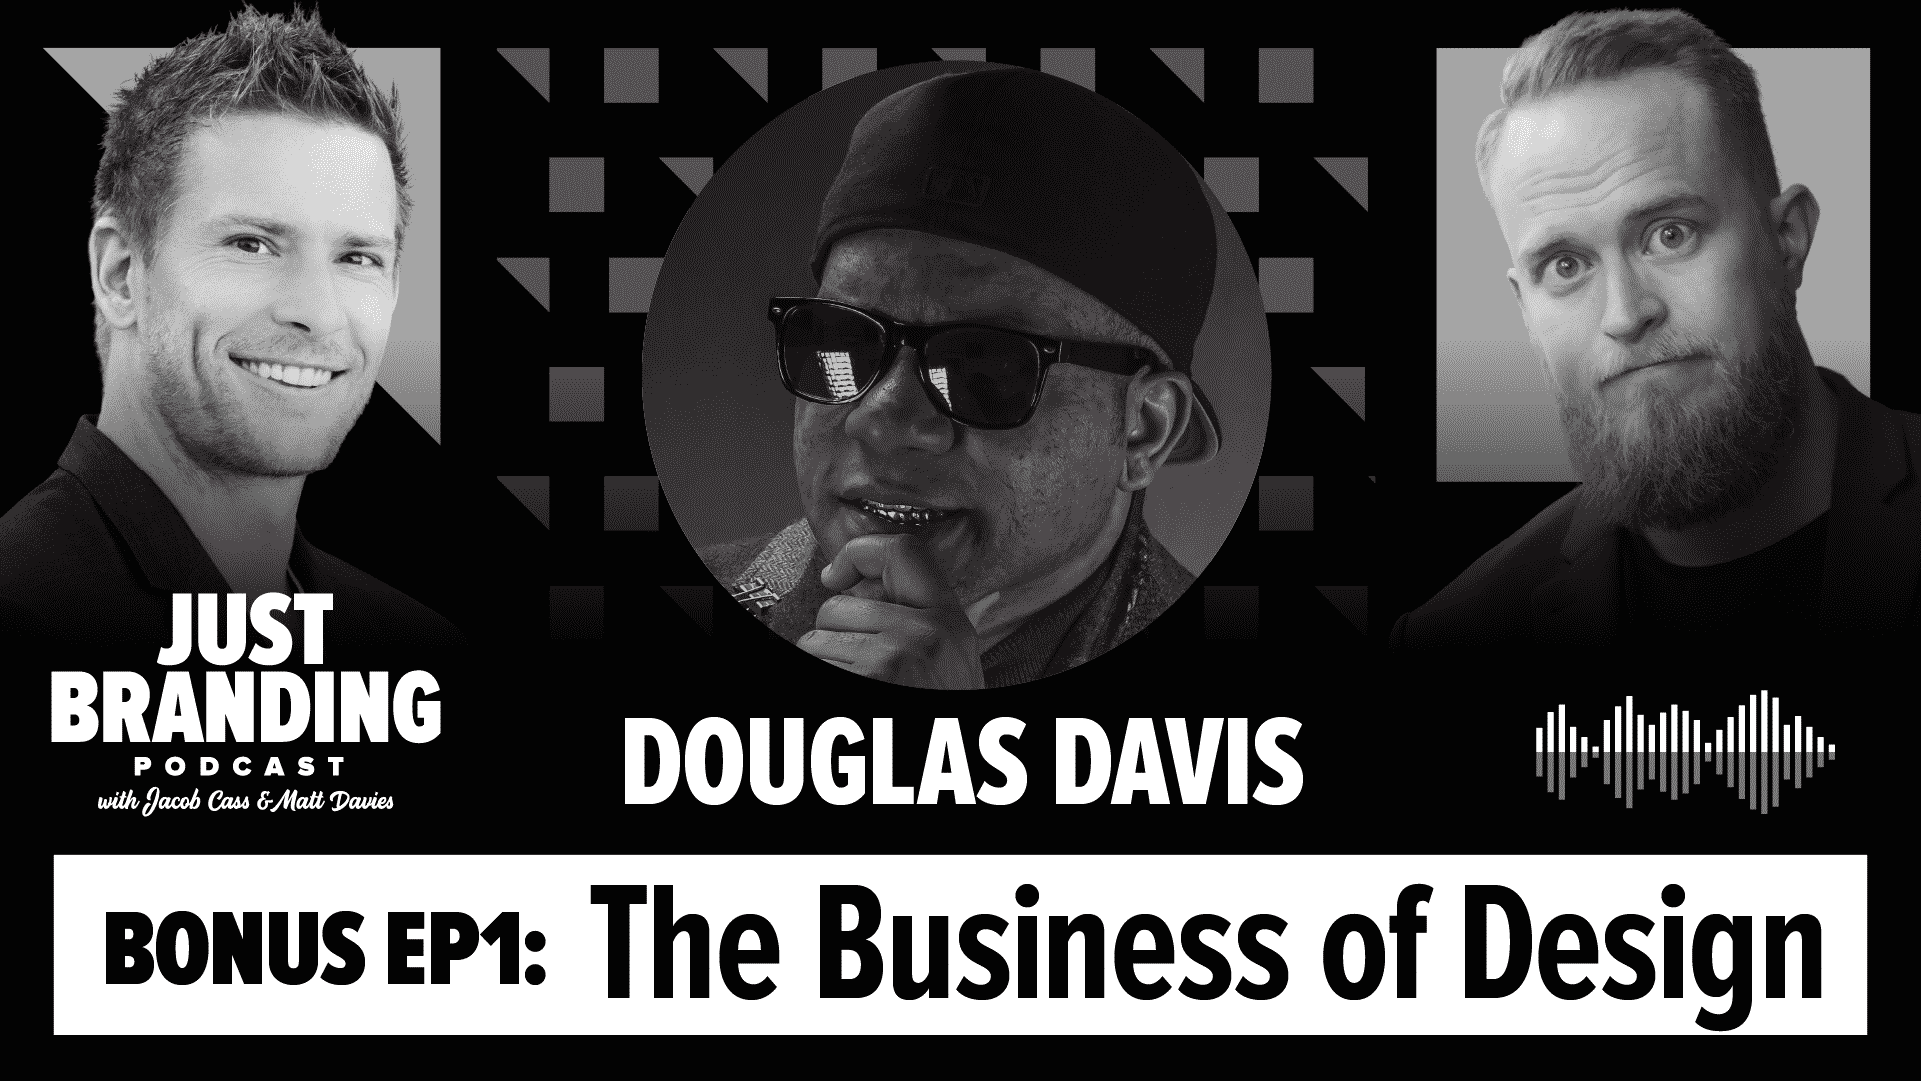 Douglas Davis